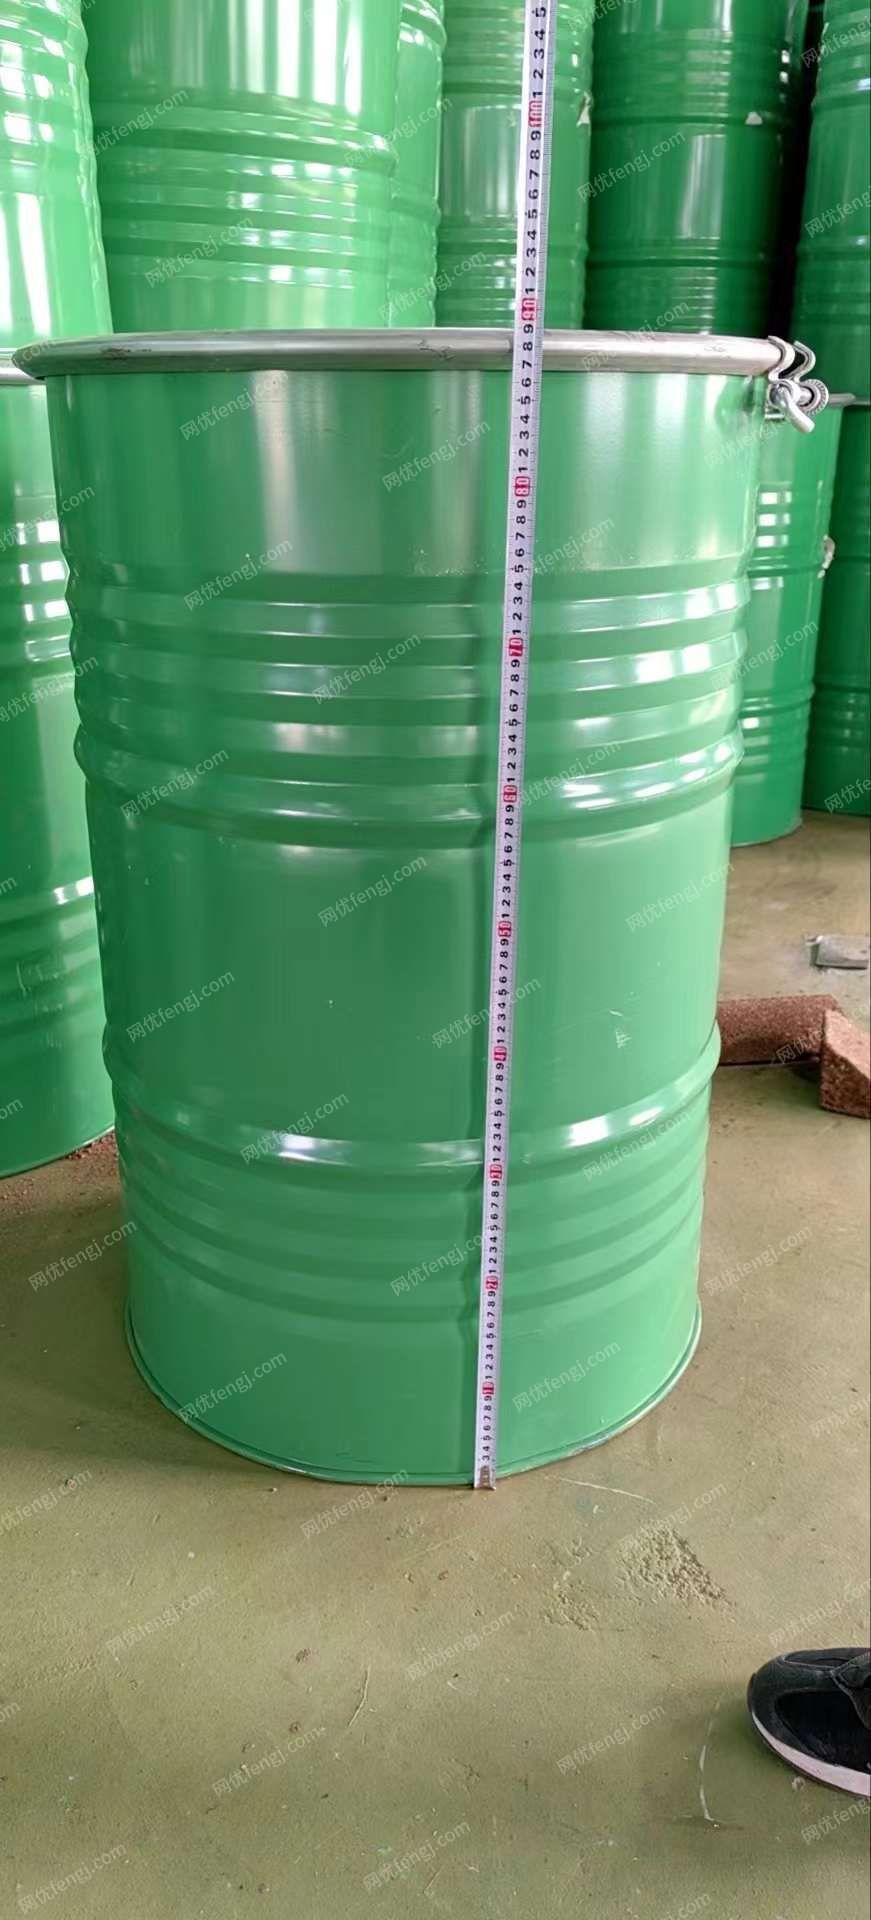 出售安徽安庆大口桶500个里外干净。统一颜色。重量17.5公斤